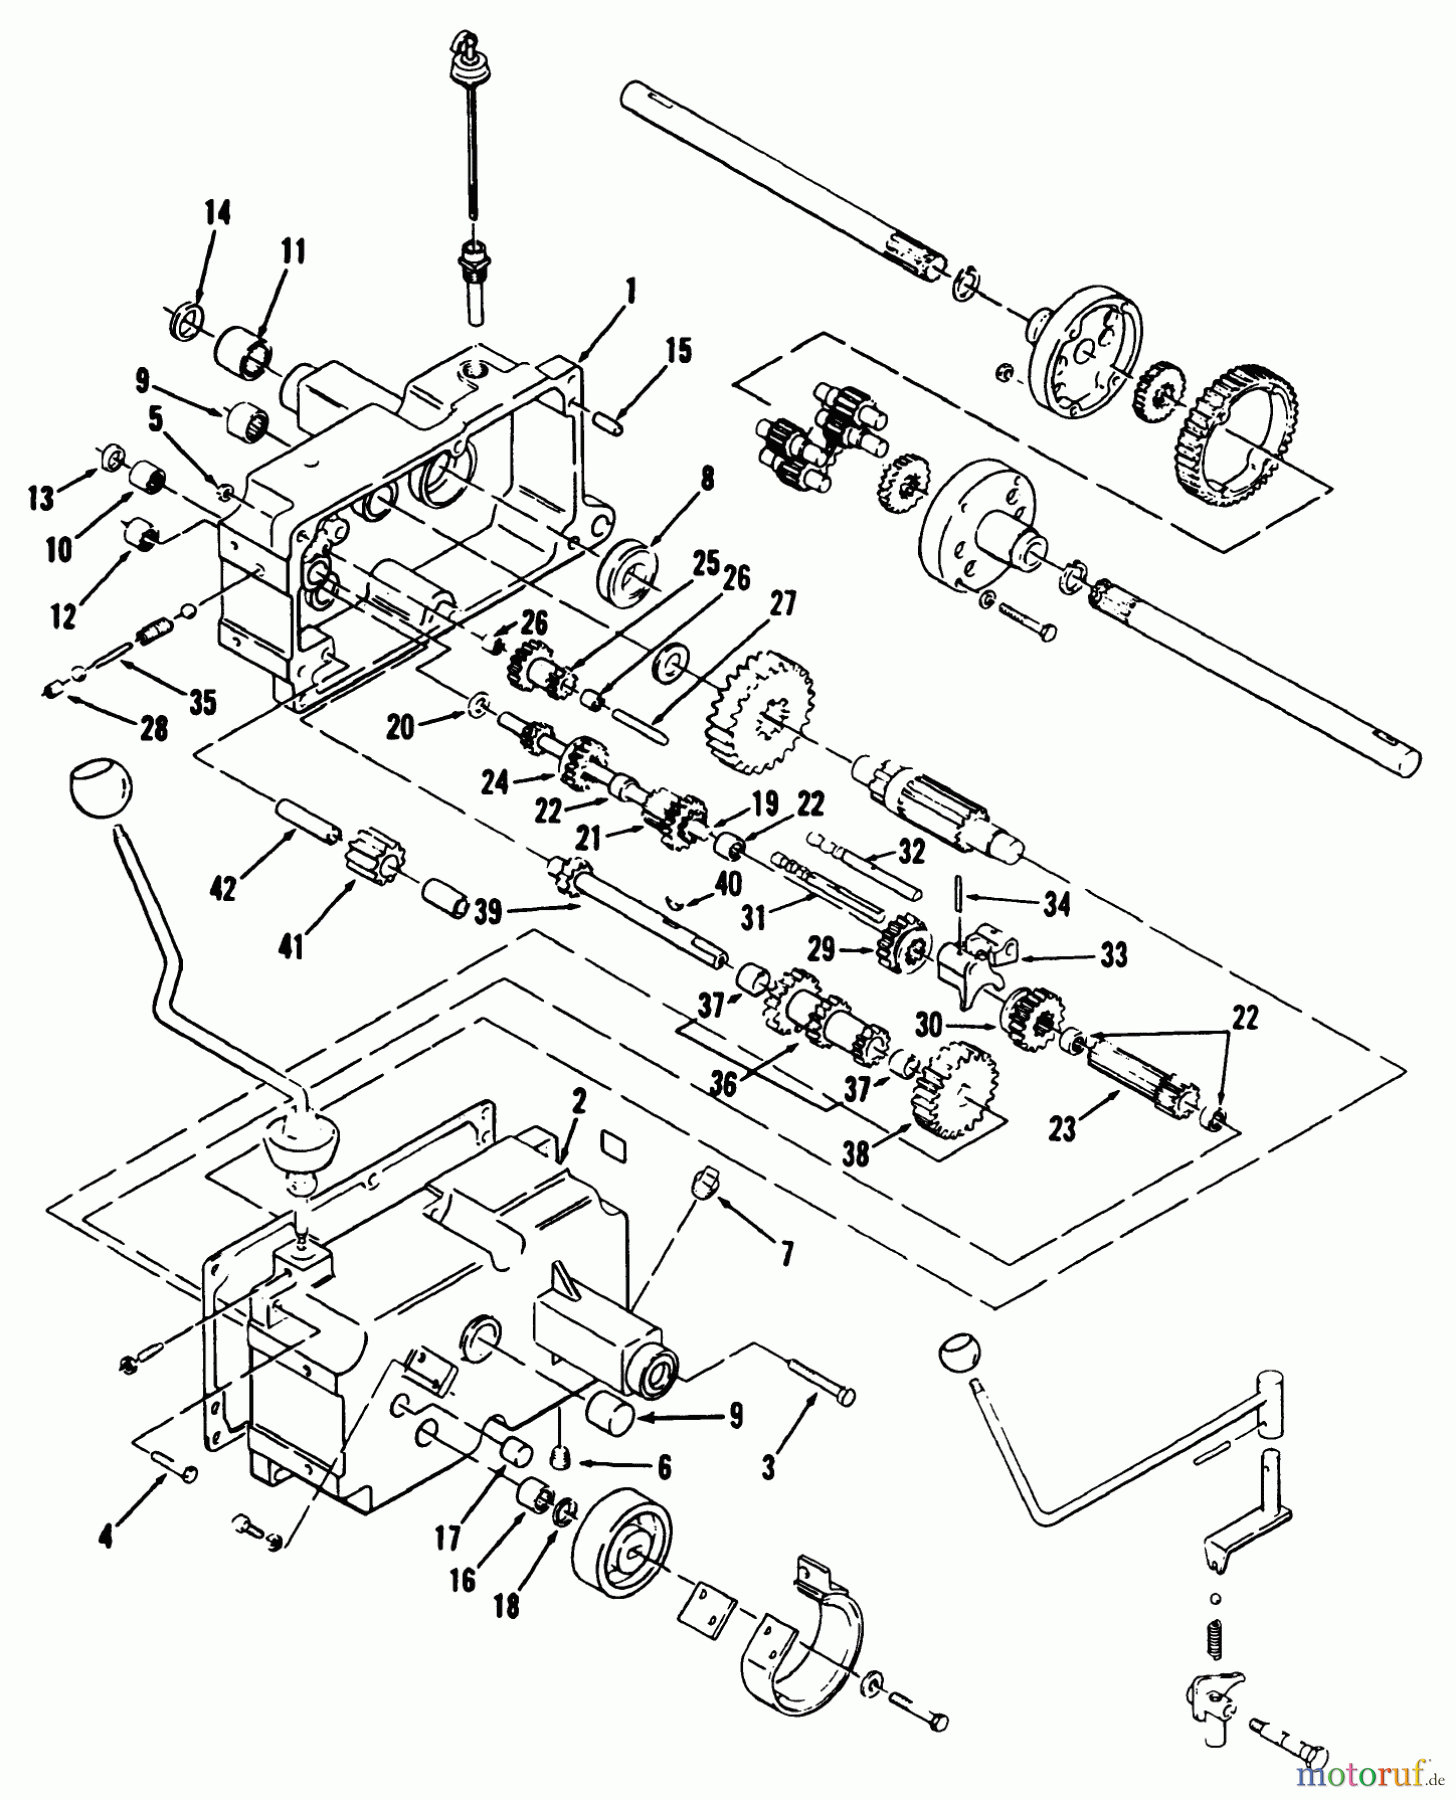  Toro Neu Mowers, Lawn & Garden Tractor Seite 1 31-10K803 (310-8) - Toro 310-8 Garden Tractor, 1992 (2000001-2999999) MECHANICAL TRANSMISSION 8-SPEED #1